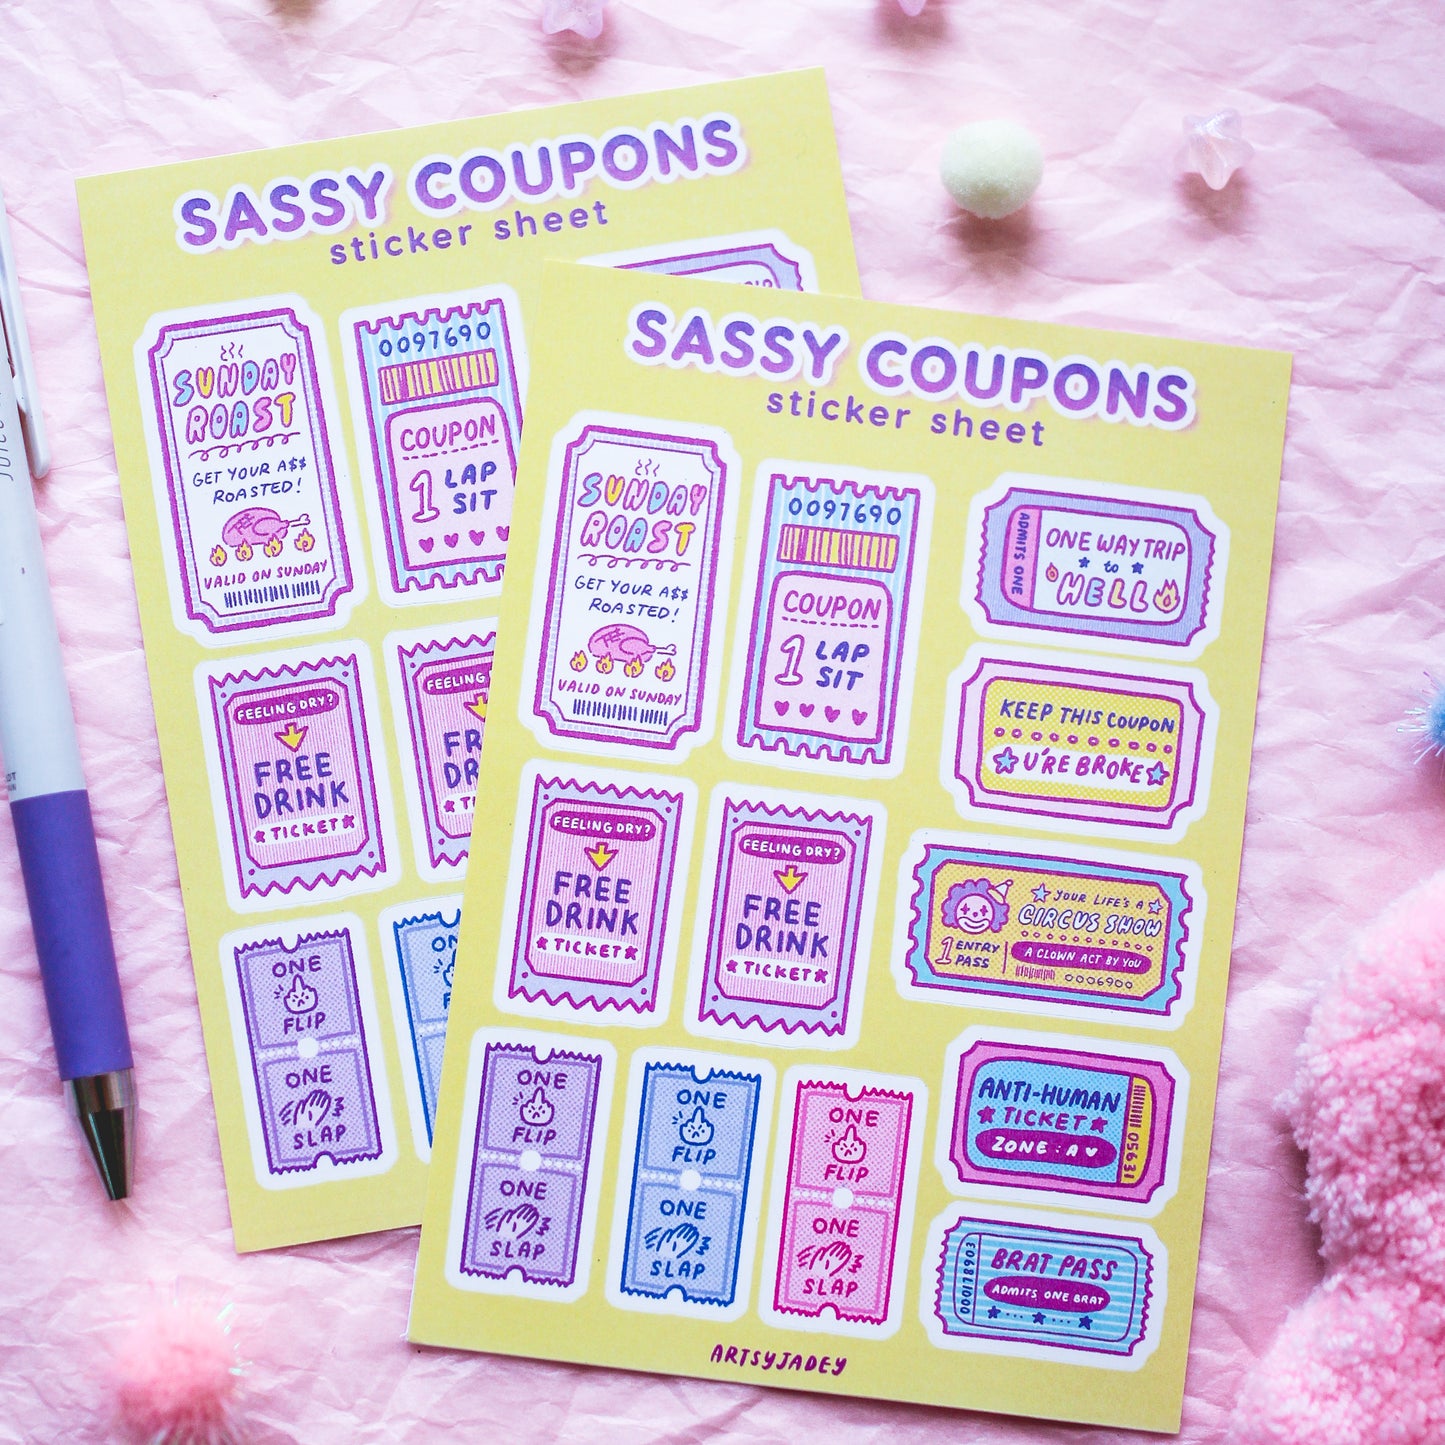 Sassy Coupons Sticker Sheet